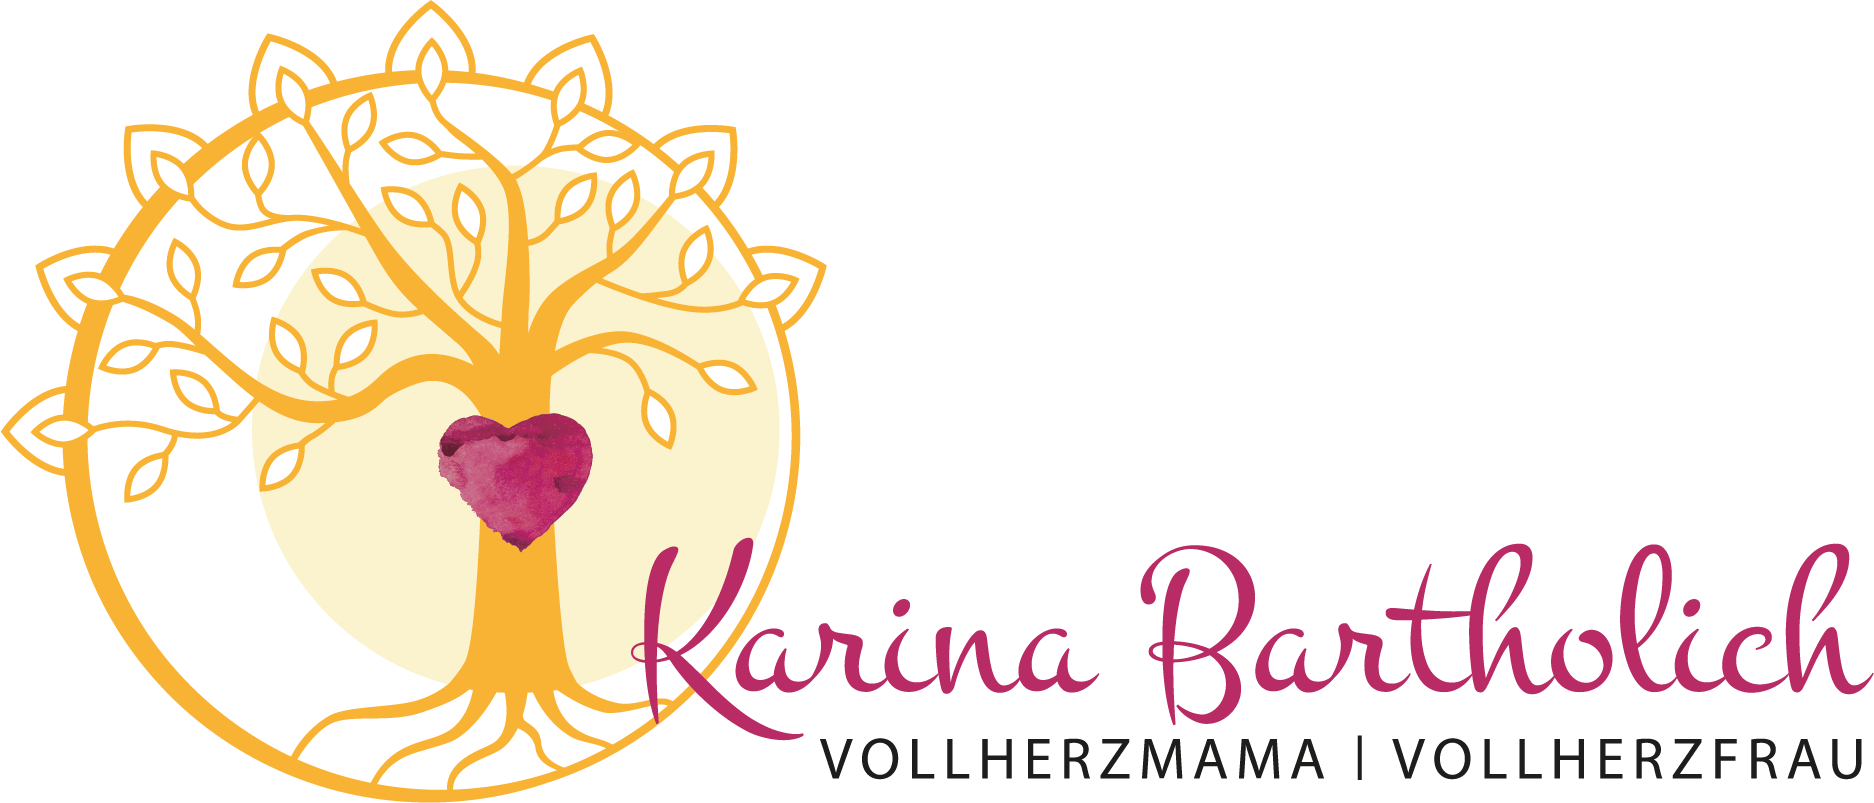 Karina Bartholich - Vollherzmama, Vollherzfrau